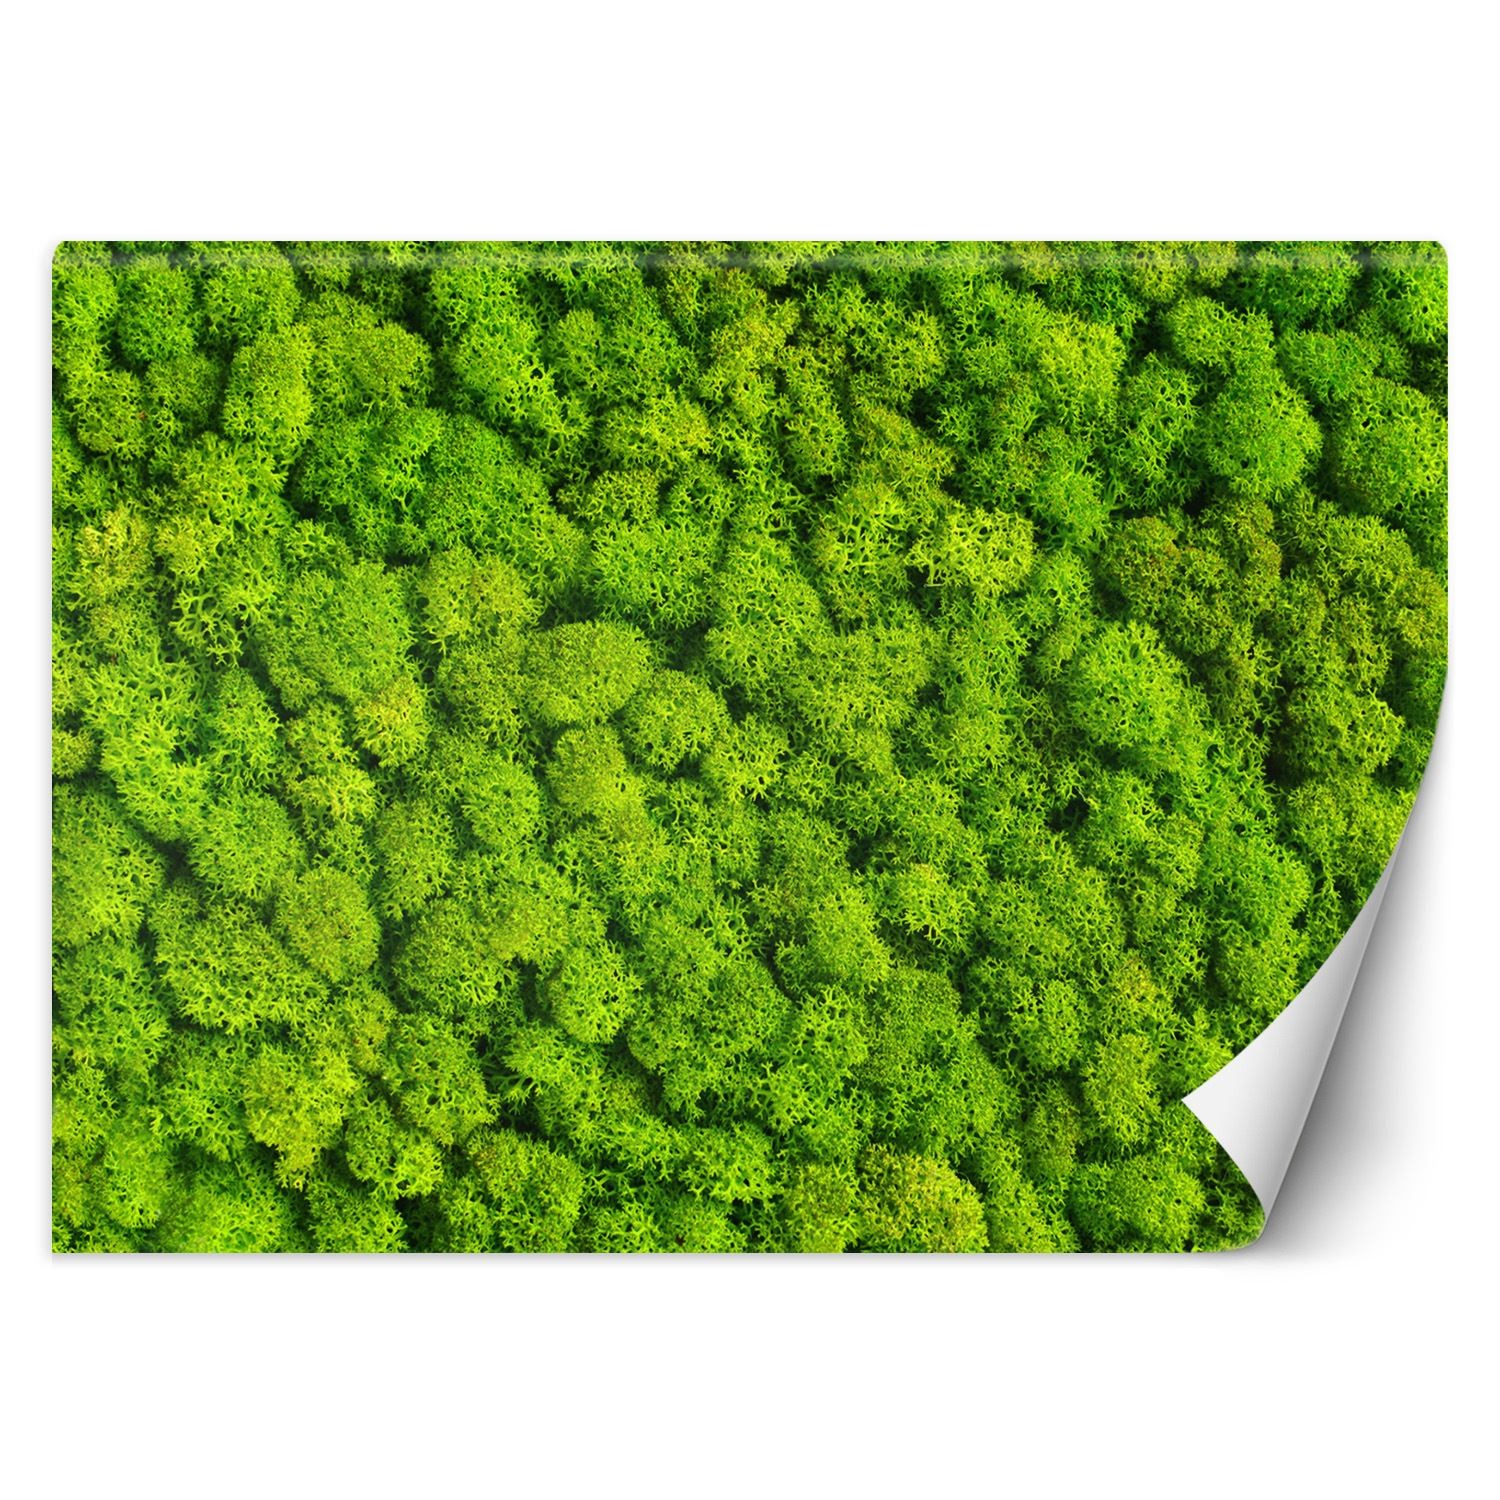 Trend24 – Behang – Weevil Moss – Vliesbehang – Behang Woonkamer – Fotobehang – 350×245 cm – Incl. behanglijm